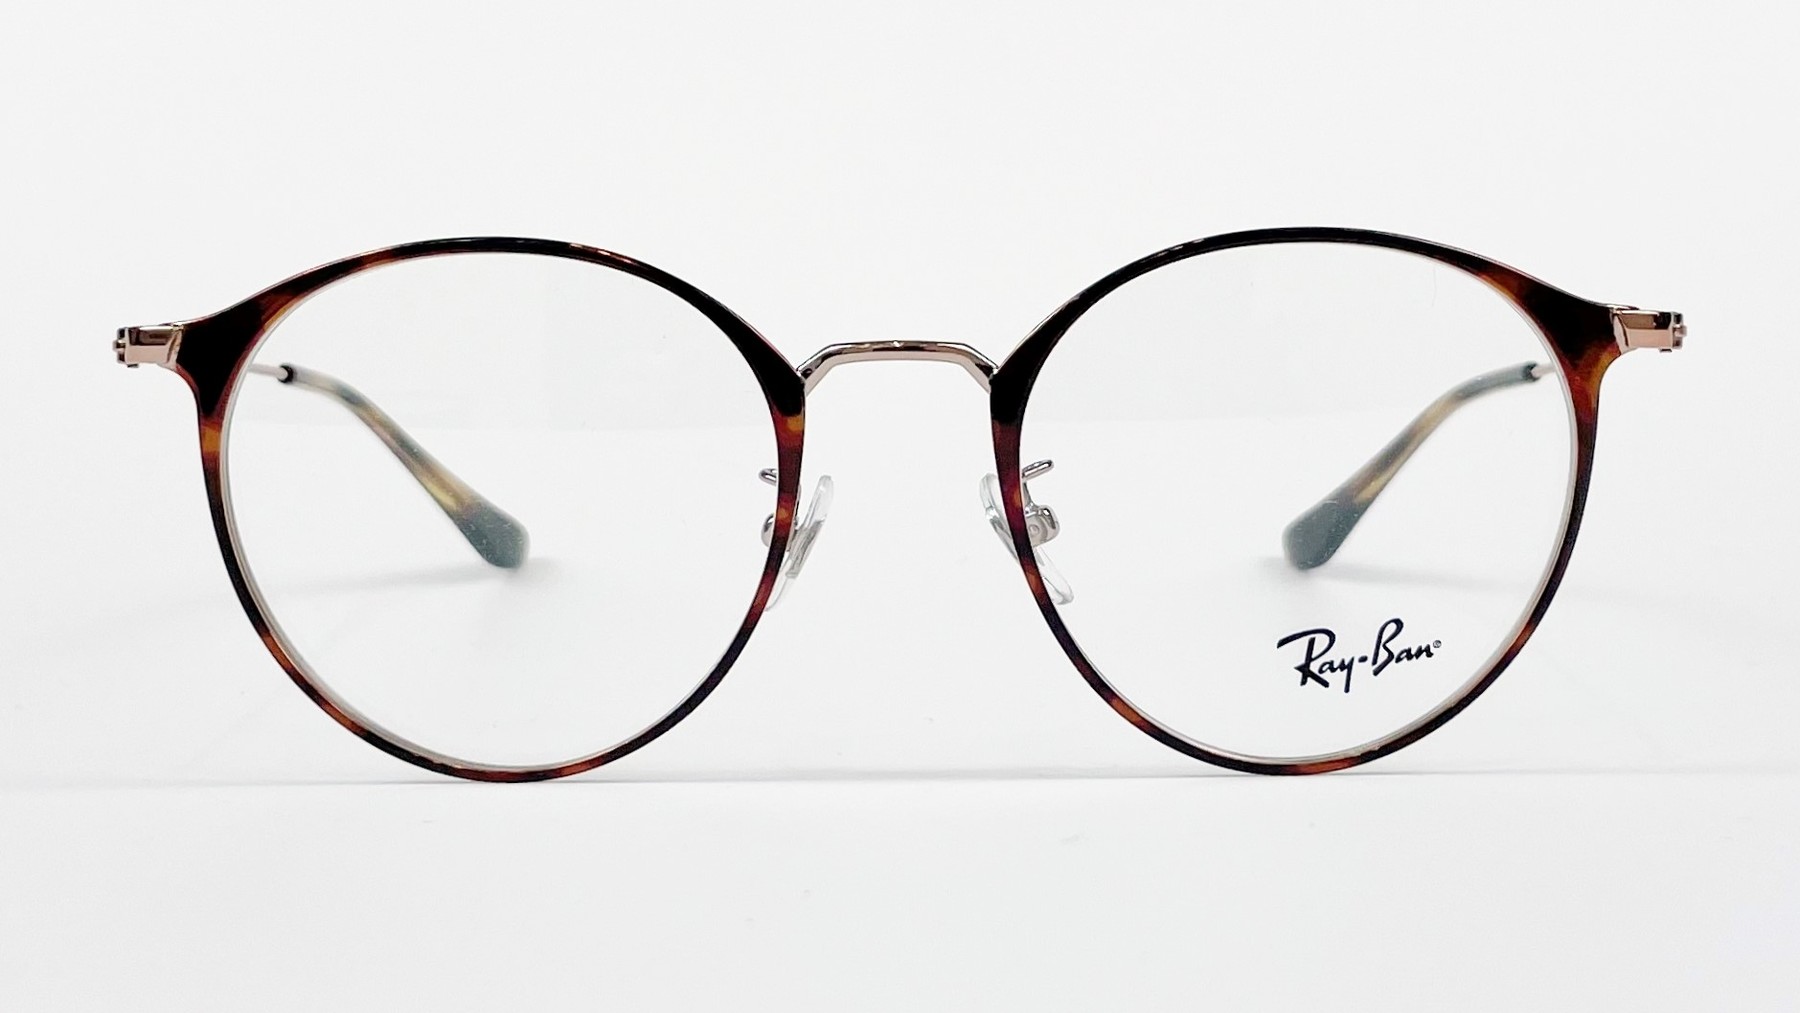 RayBan RB6378F 2971, Korean glasses, sunglasses, eyeglasses, glasses